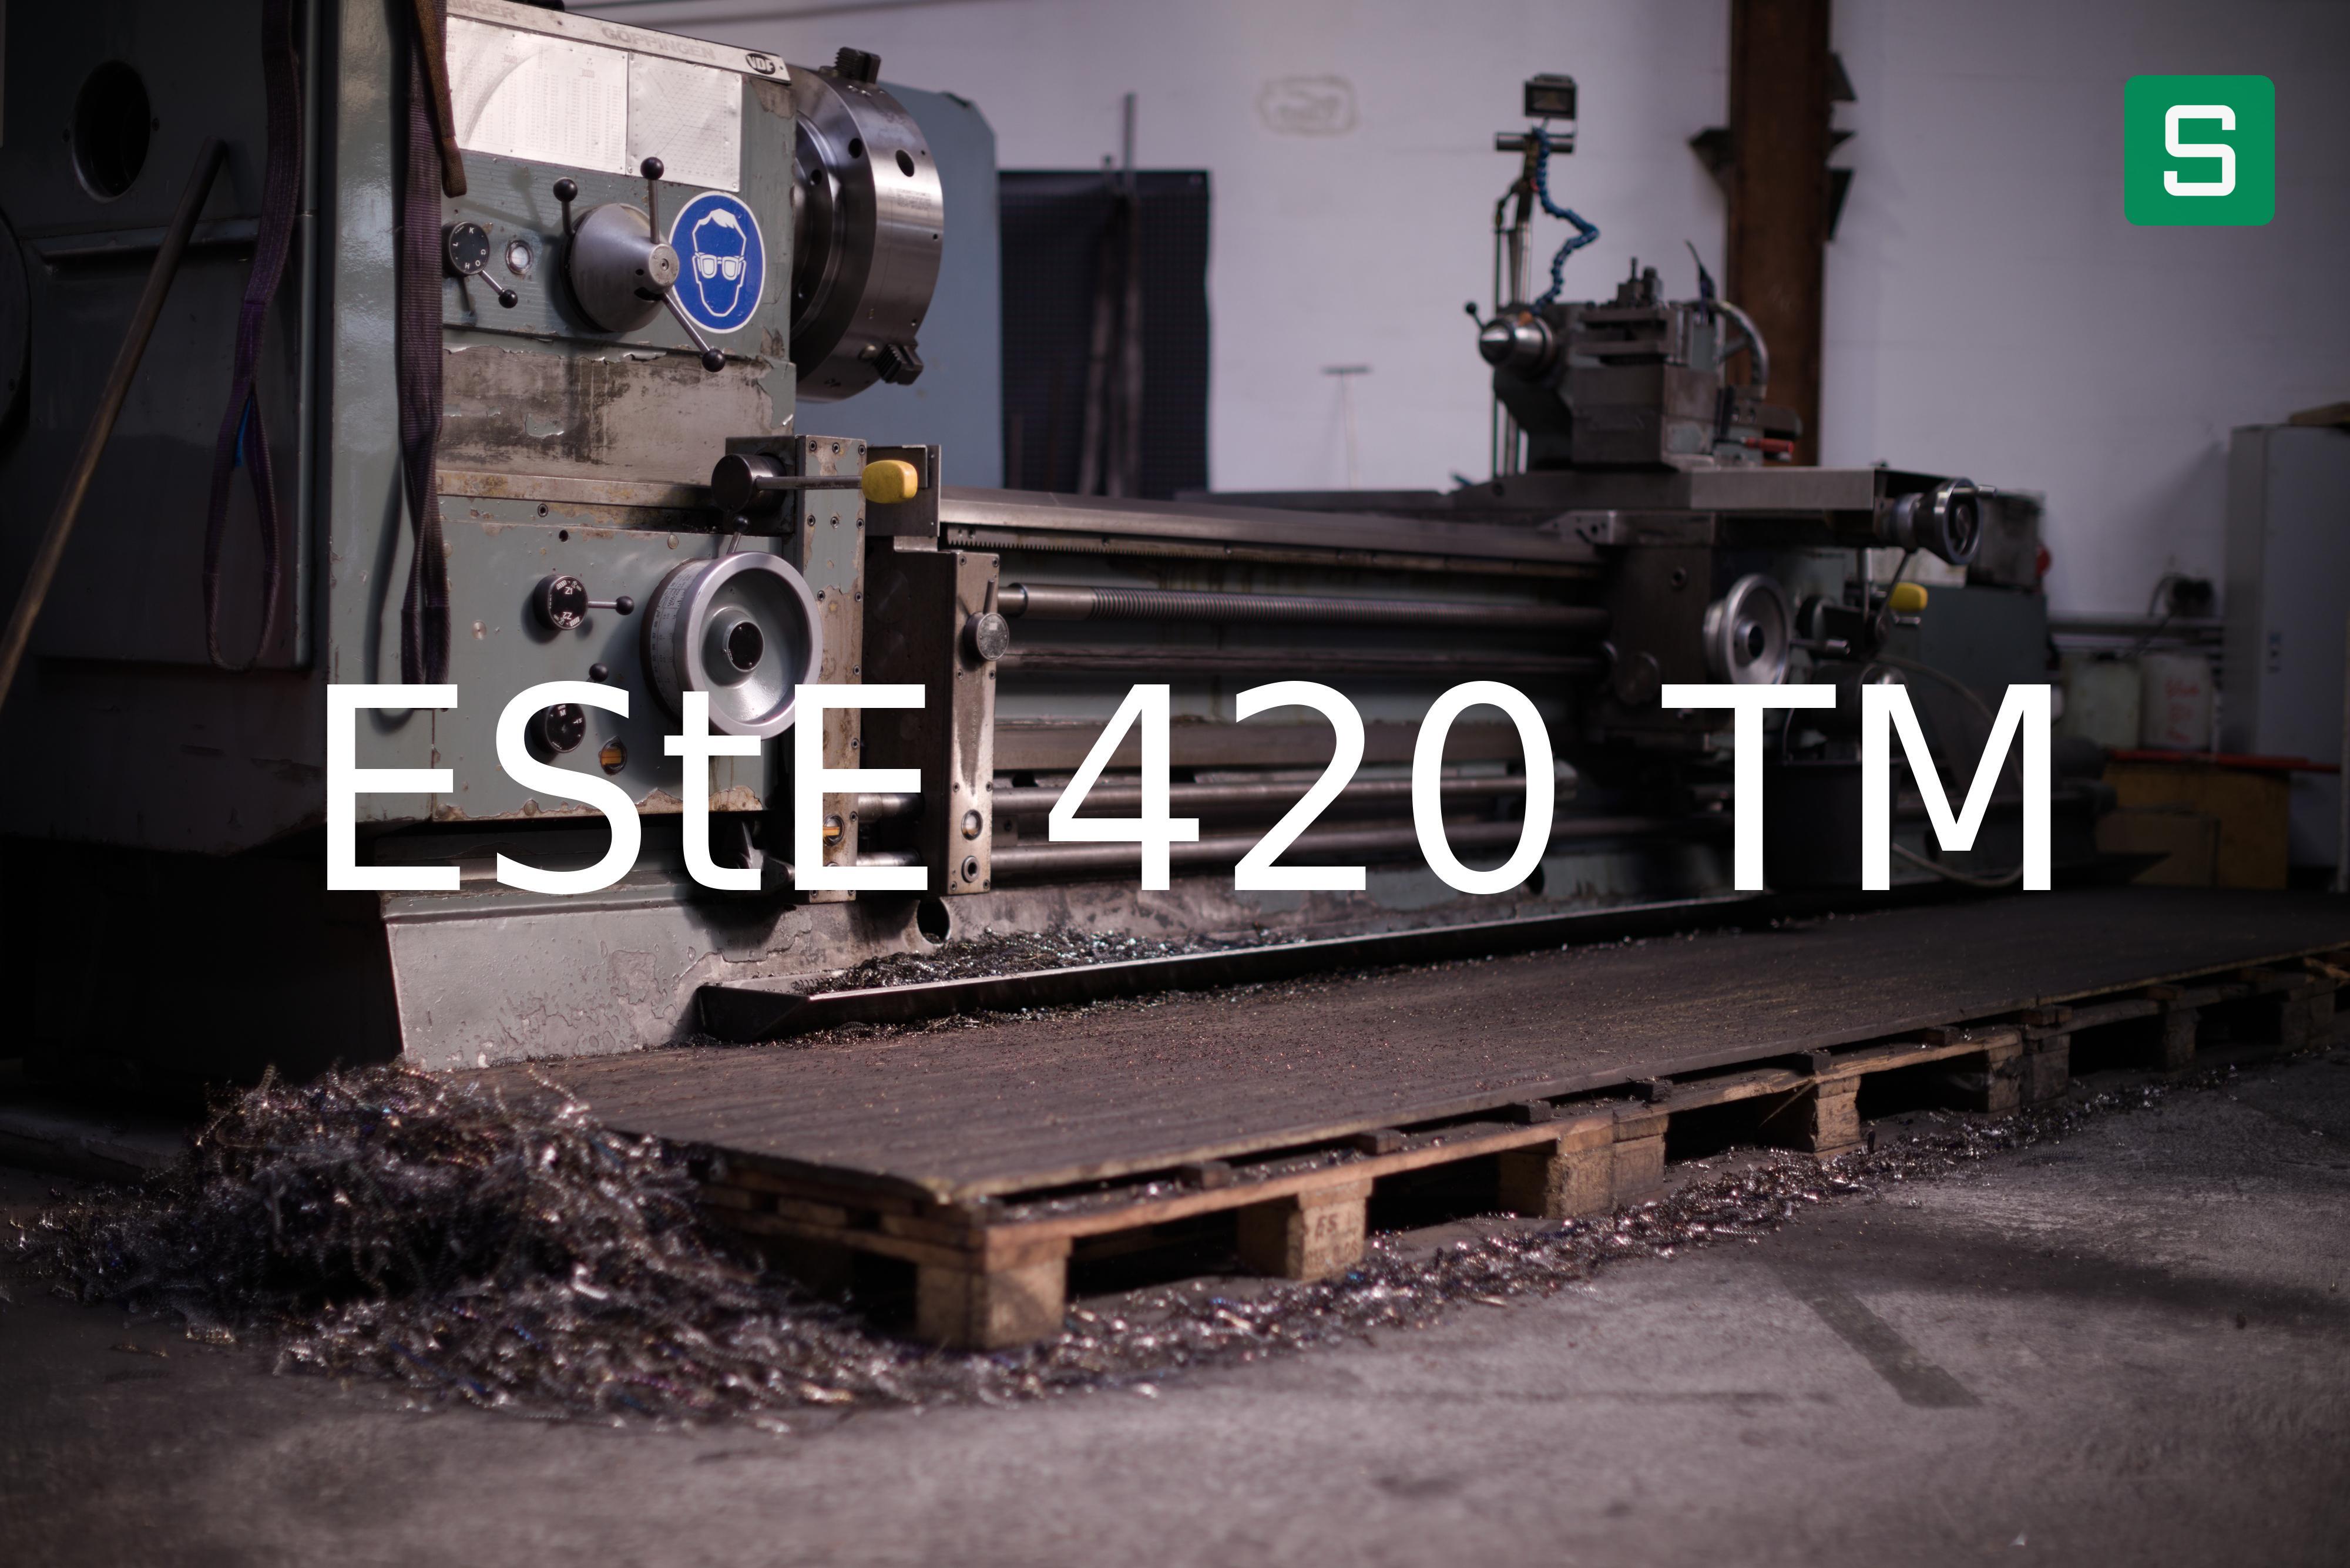 Steel Material: EStE 420 TM